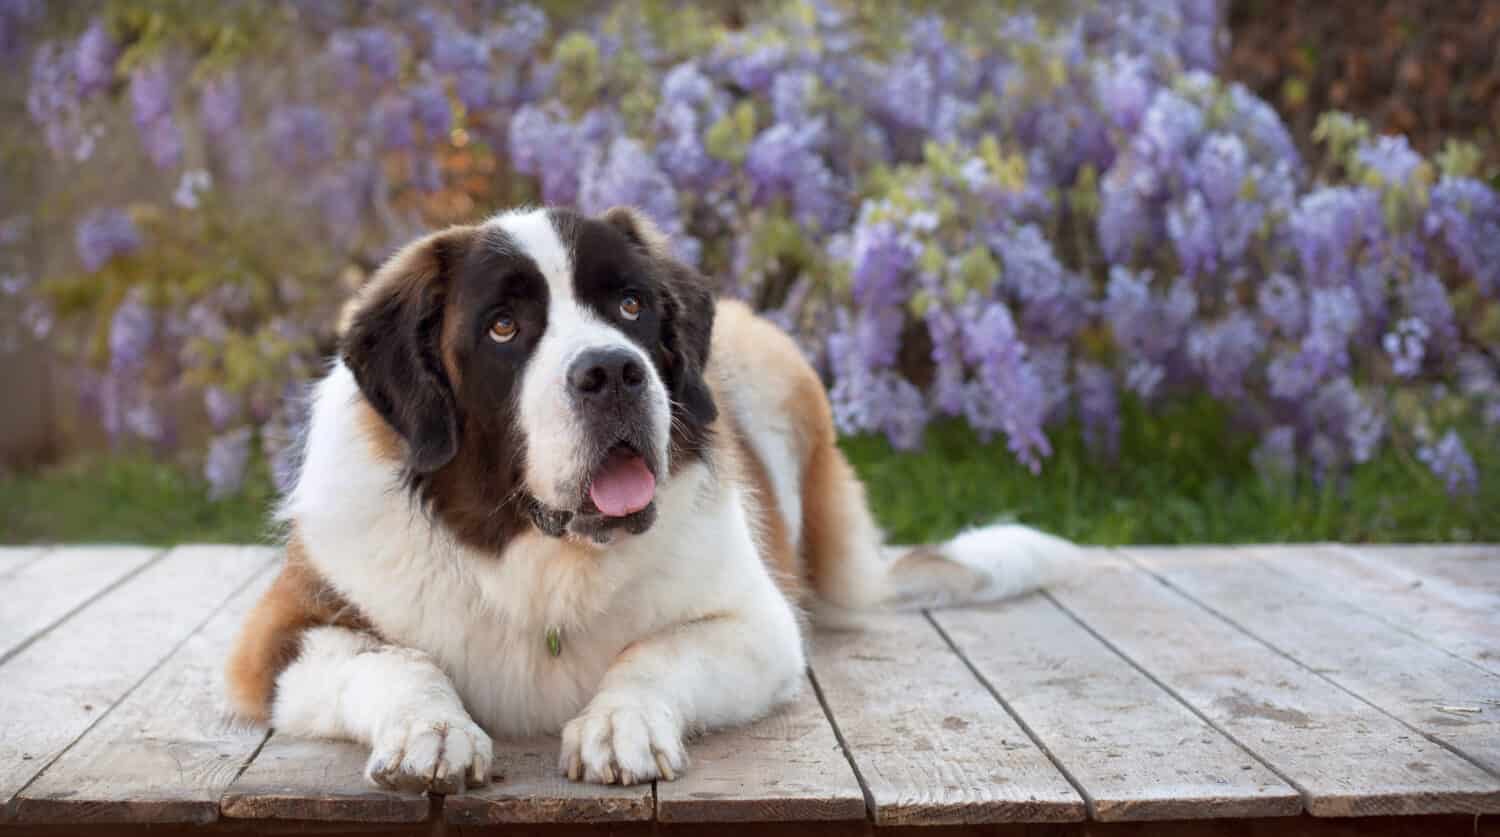 Un cane molto grande si siede e guarda in alto su una tavola di legno davanti a viti di glicine.  Il grande e bellissimo San Bernardo giace su una piattaforma di legno guardando in alto con la bocca un po' aperta.